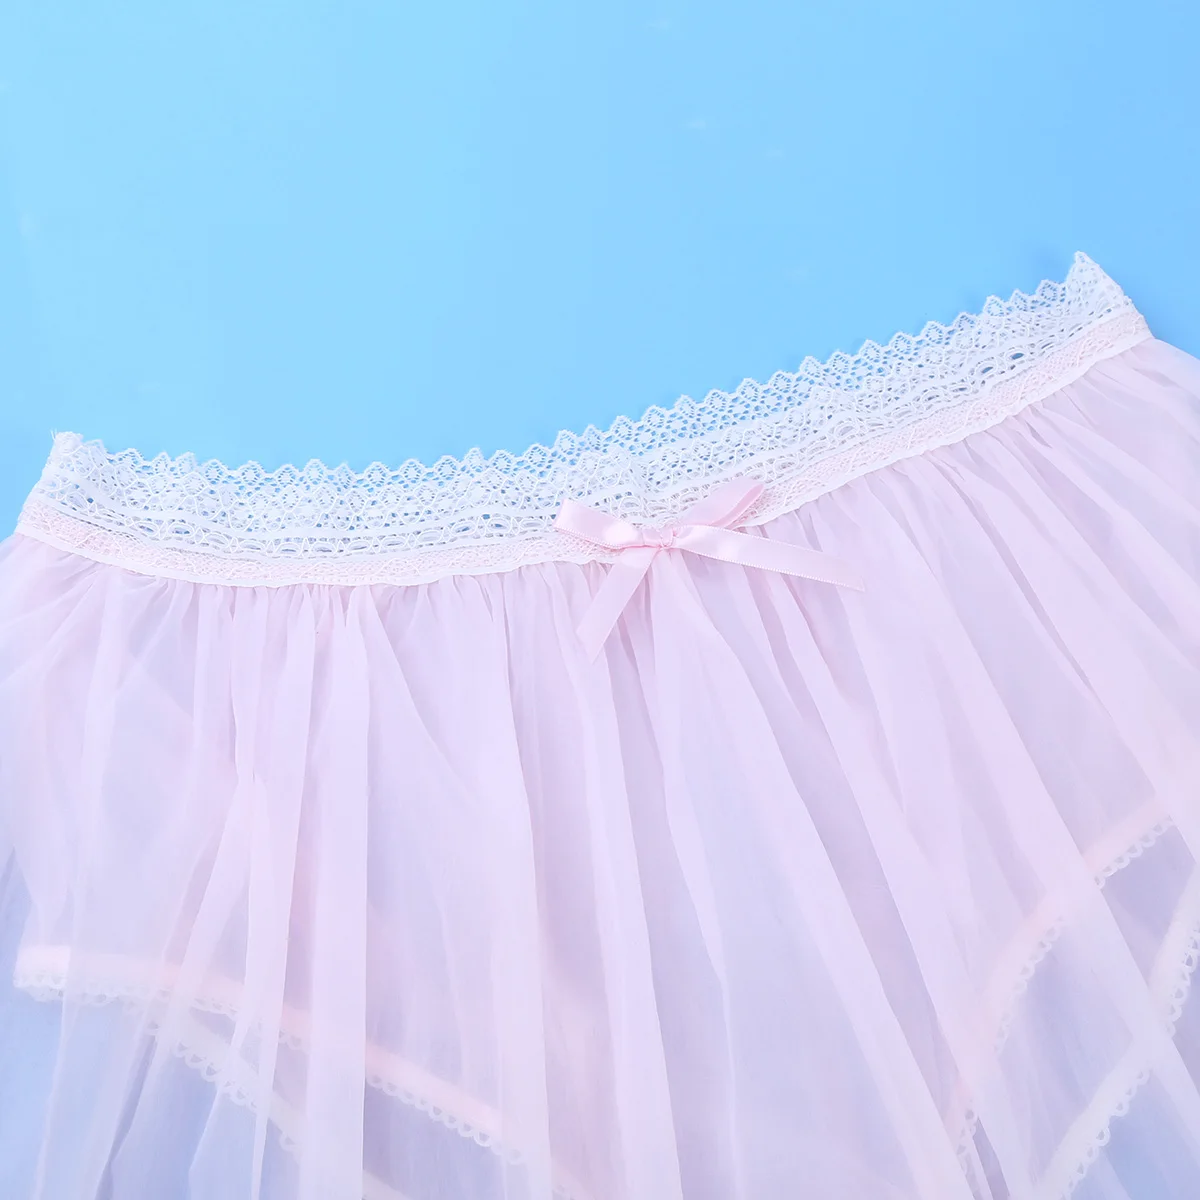 Iiniim/женское белье для взрослых, сексуальное нижнее белье Babydolls, эластичная кружевная резинка на талии, прозрачное экзотическое перекрестное платье, короткая юбка, трусики